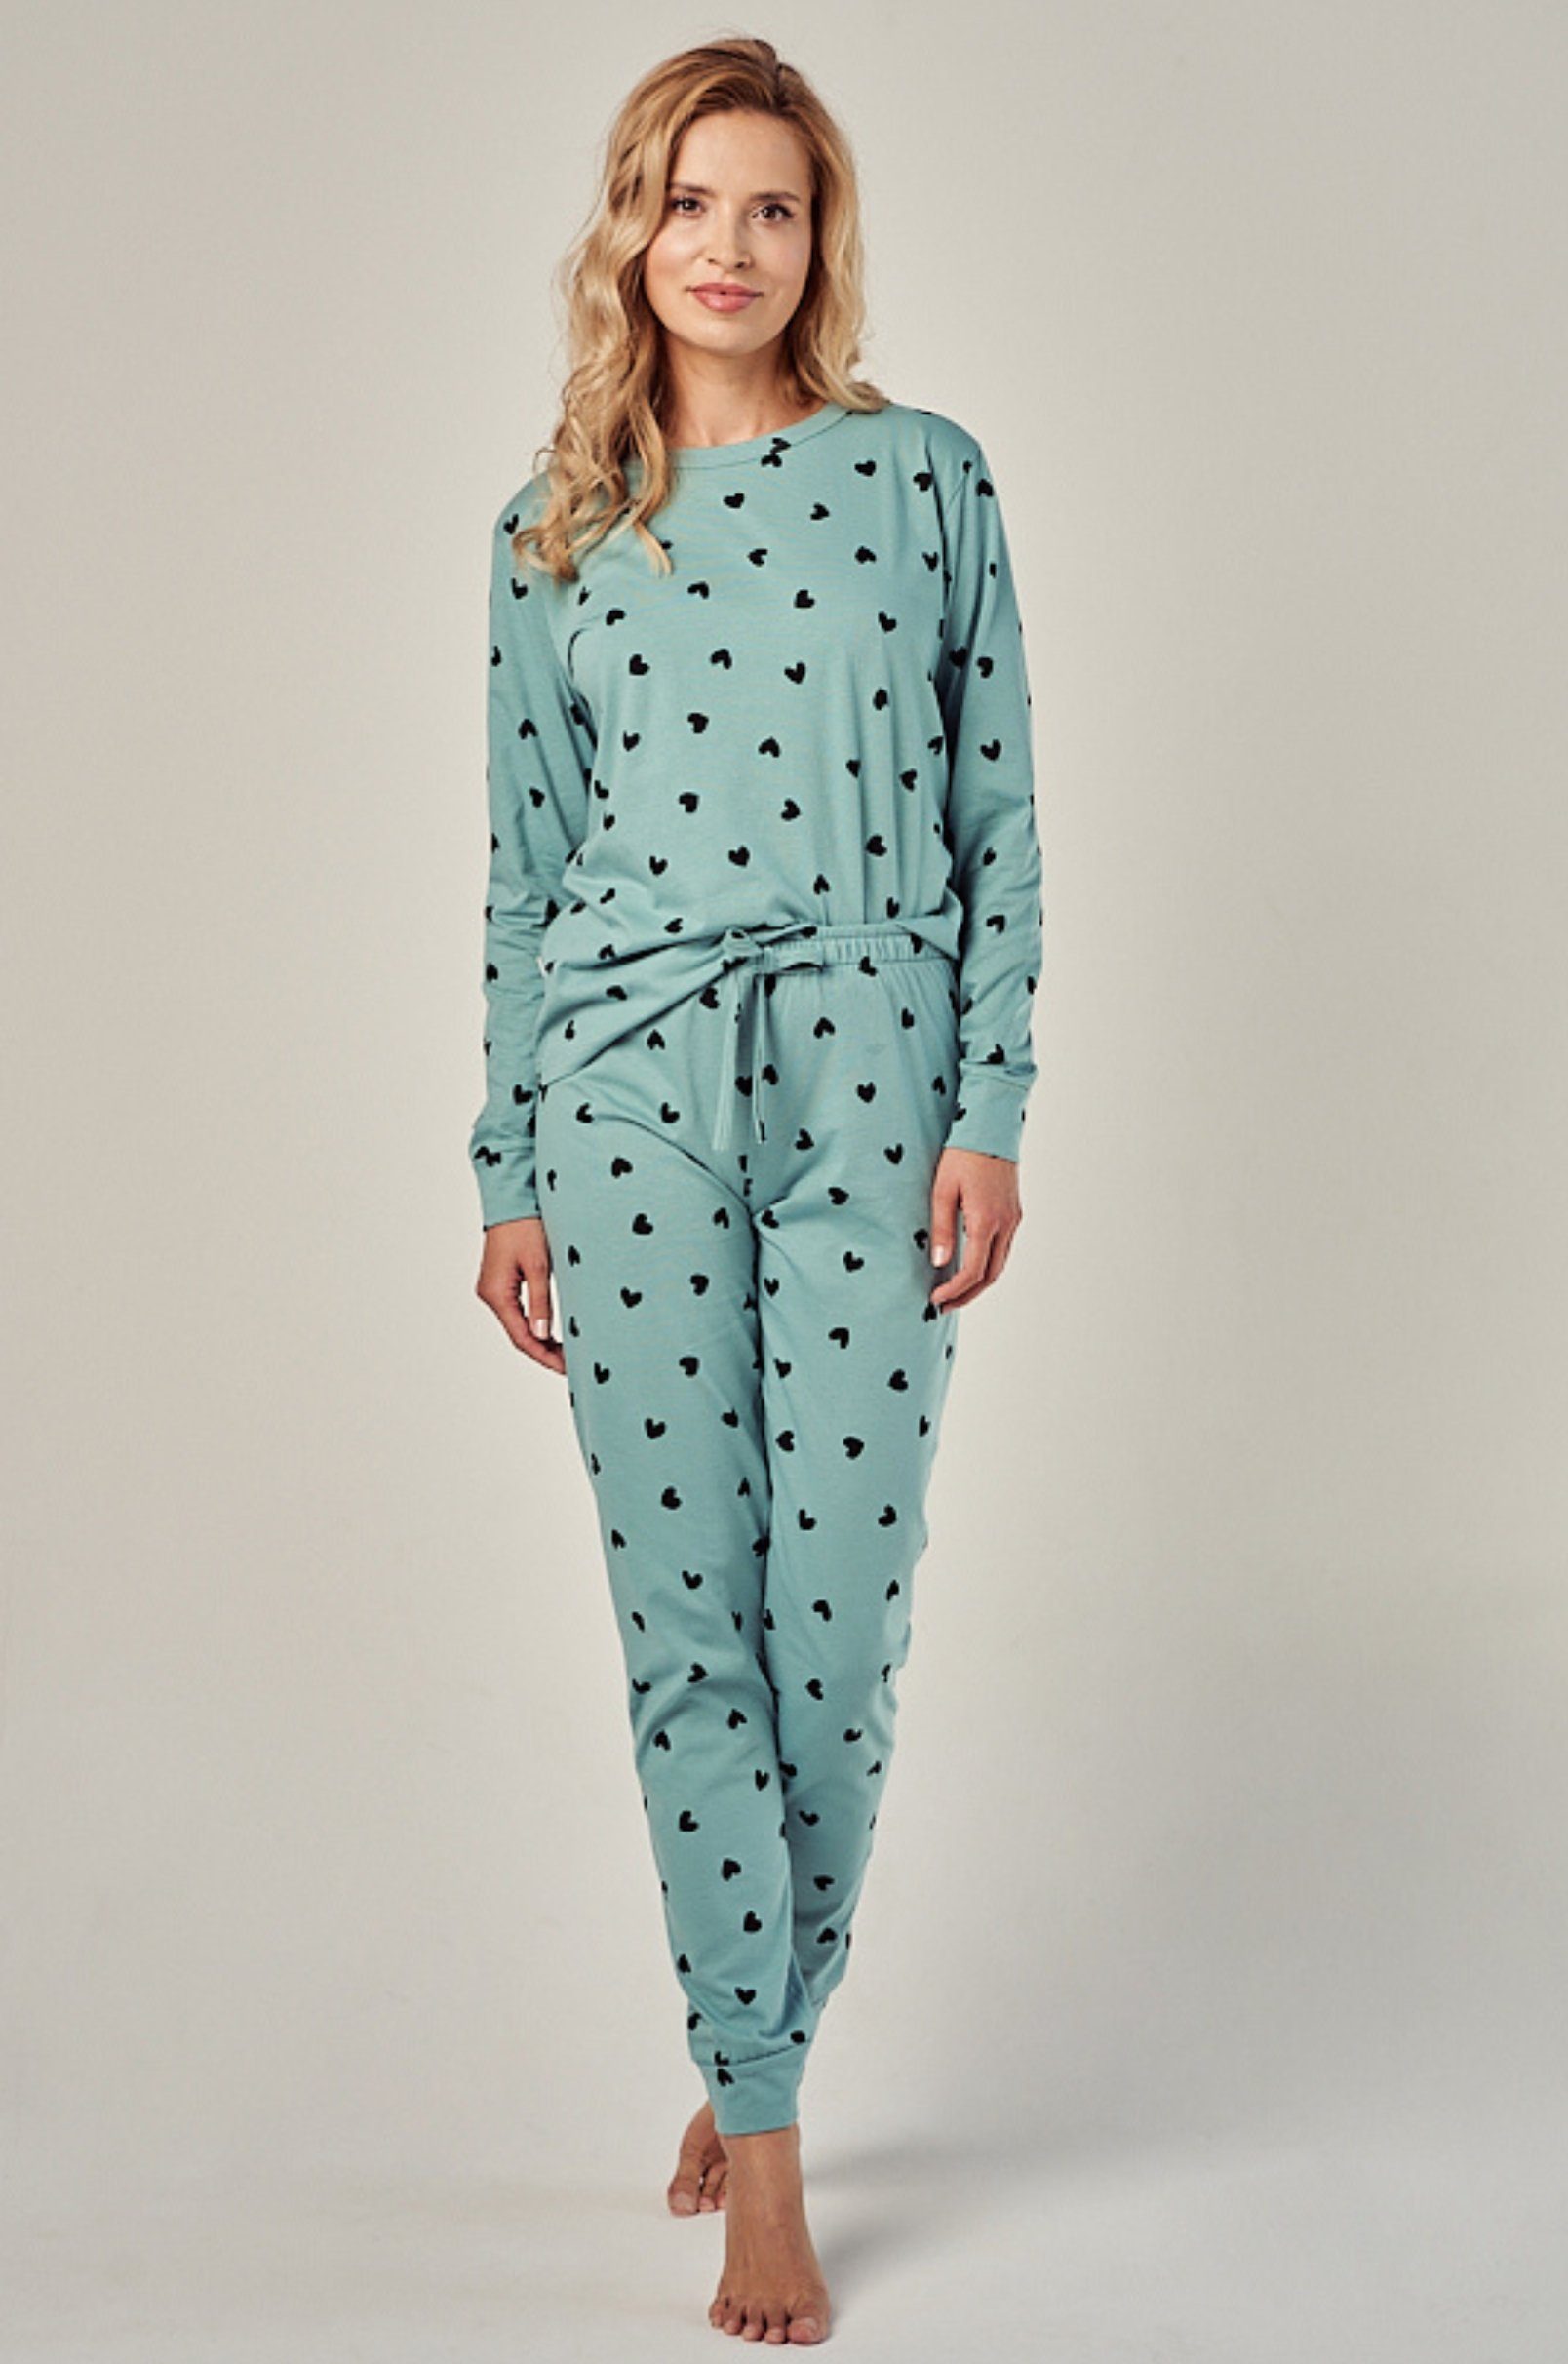 Damen in Pyjama (2 Sommeil mit Herzdruck dunkelgrün tlg) Schlafanzug Mademoiselle